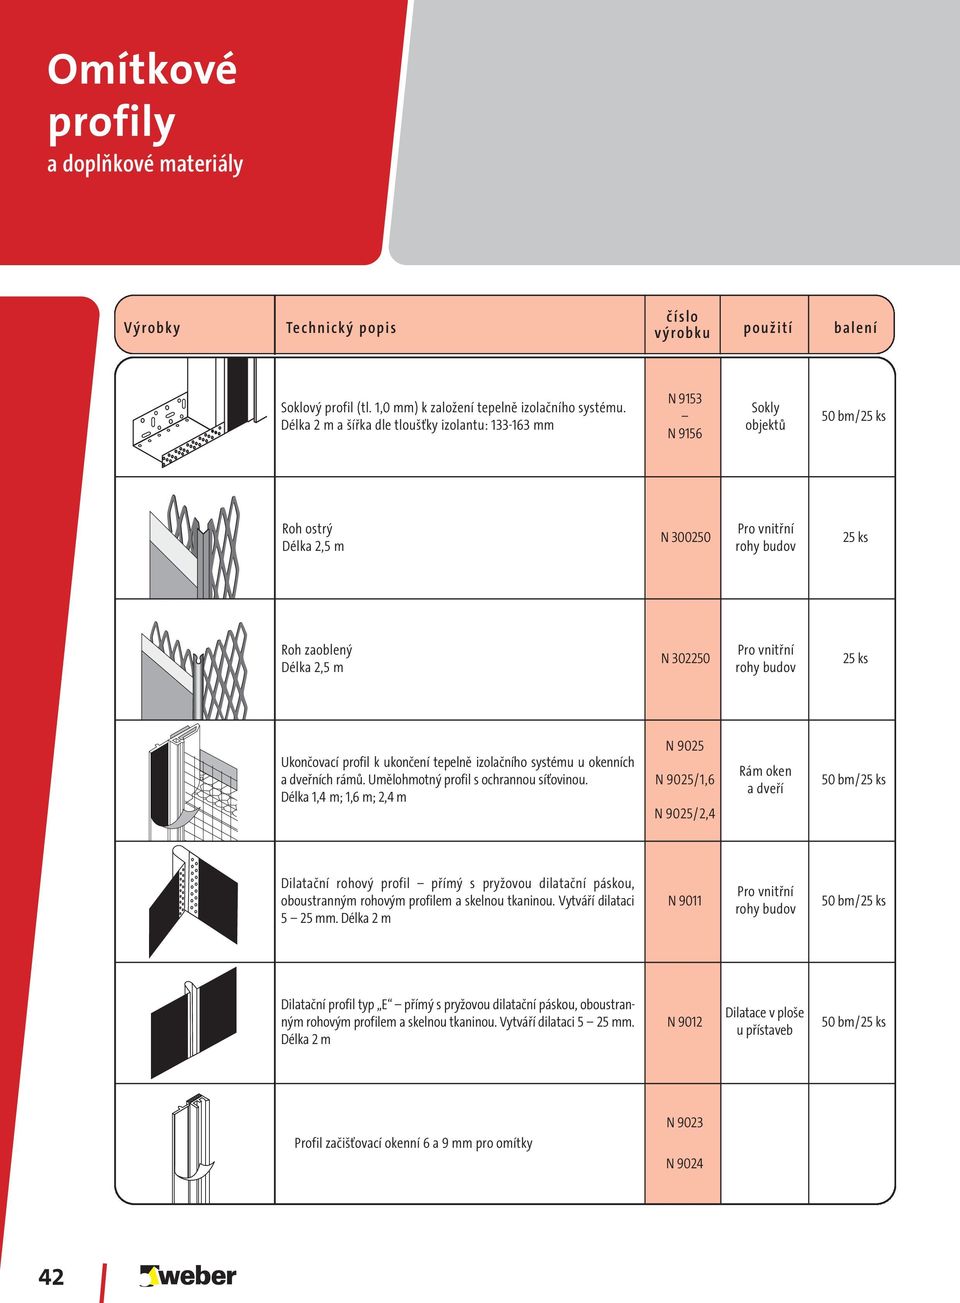 rohy budov 25 ks Ukončovací profil k ukončení tepelně izolačního systému u okenních a dveřních rámů. Umělohmotný profil s ochrannou síťovinou.